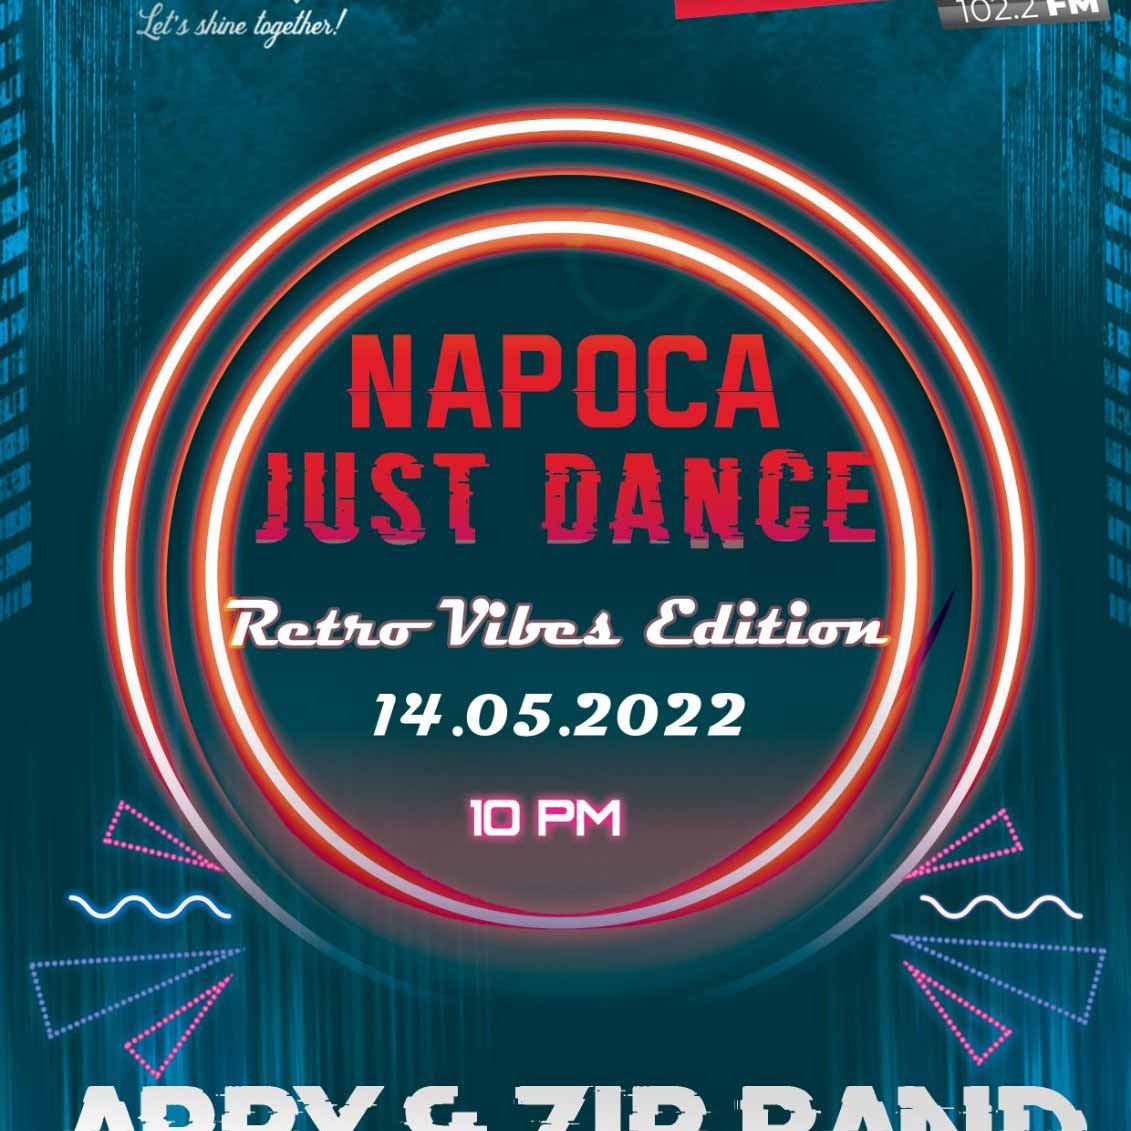 Ritmurile adolescenței tale la prima ediție Napoca Just Dance by Napoca FM, retro vibes edition